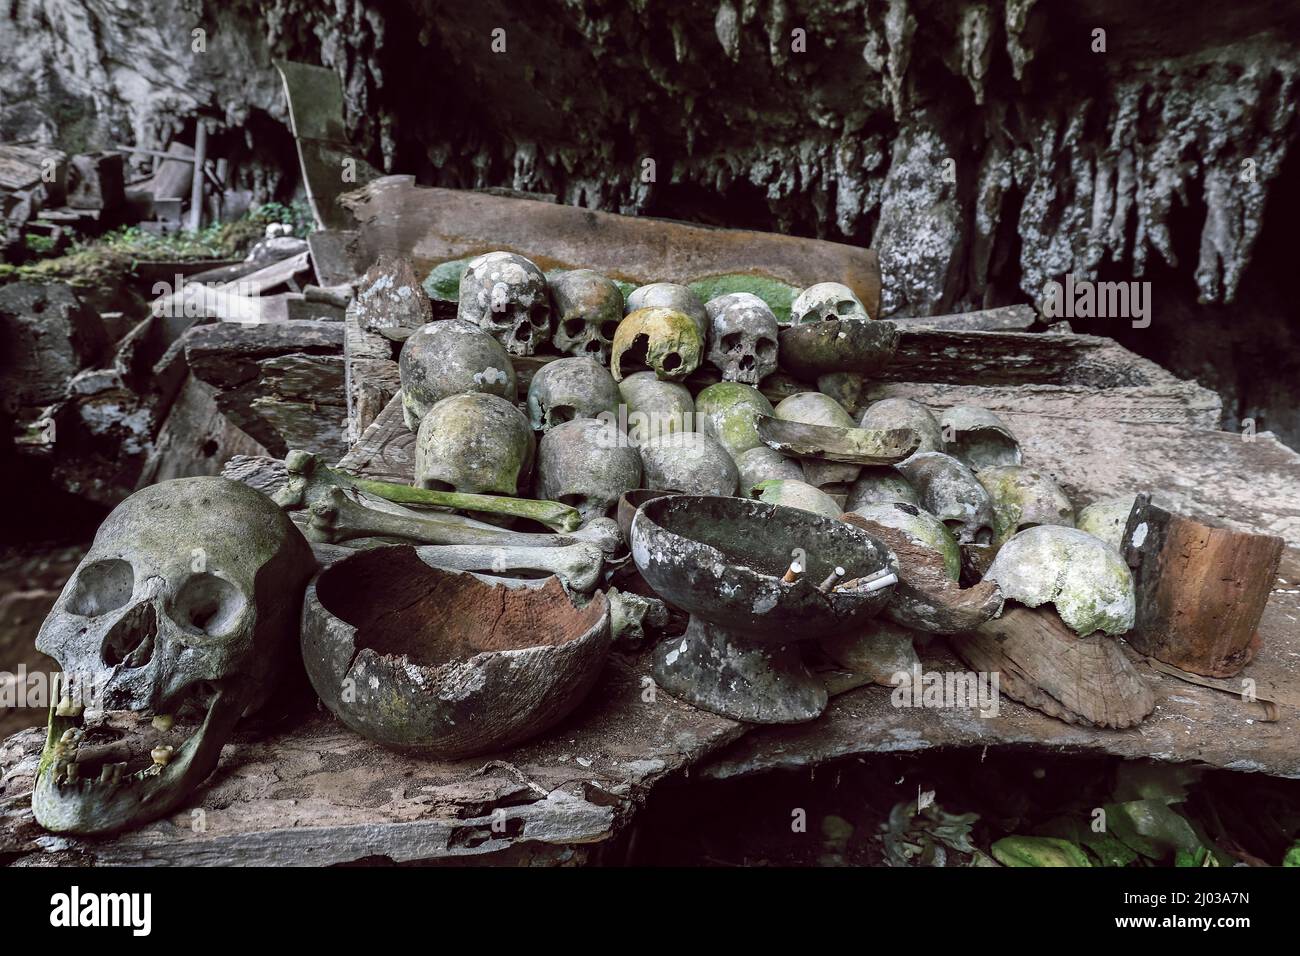 Schädel in einer 700 Jahre alten Grabhöhle in Lombok Parinding, nördlich von Rantepao, Lombok Parinding, Toraja, Süd-Sulawesi, Indonesien, Südostasien, Asien Stockfoto